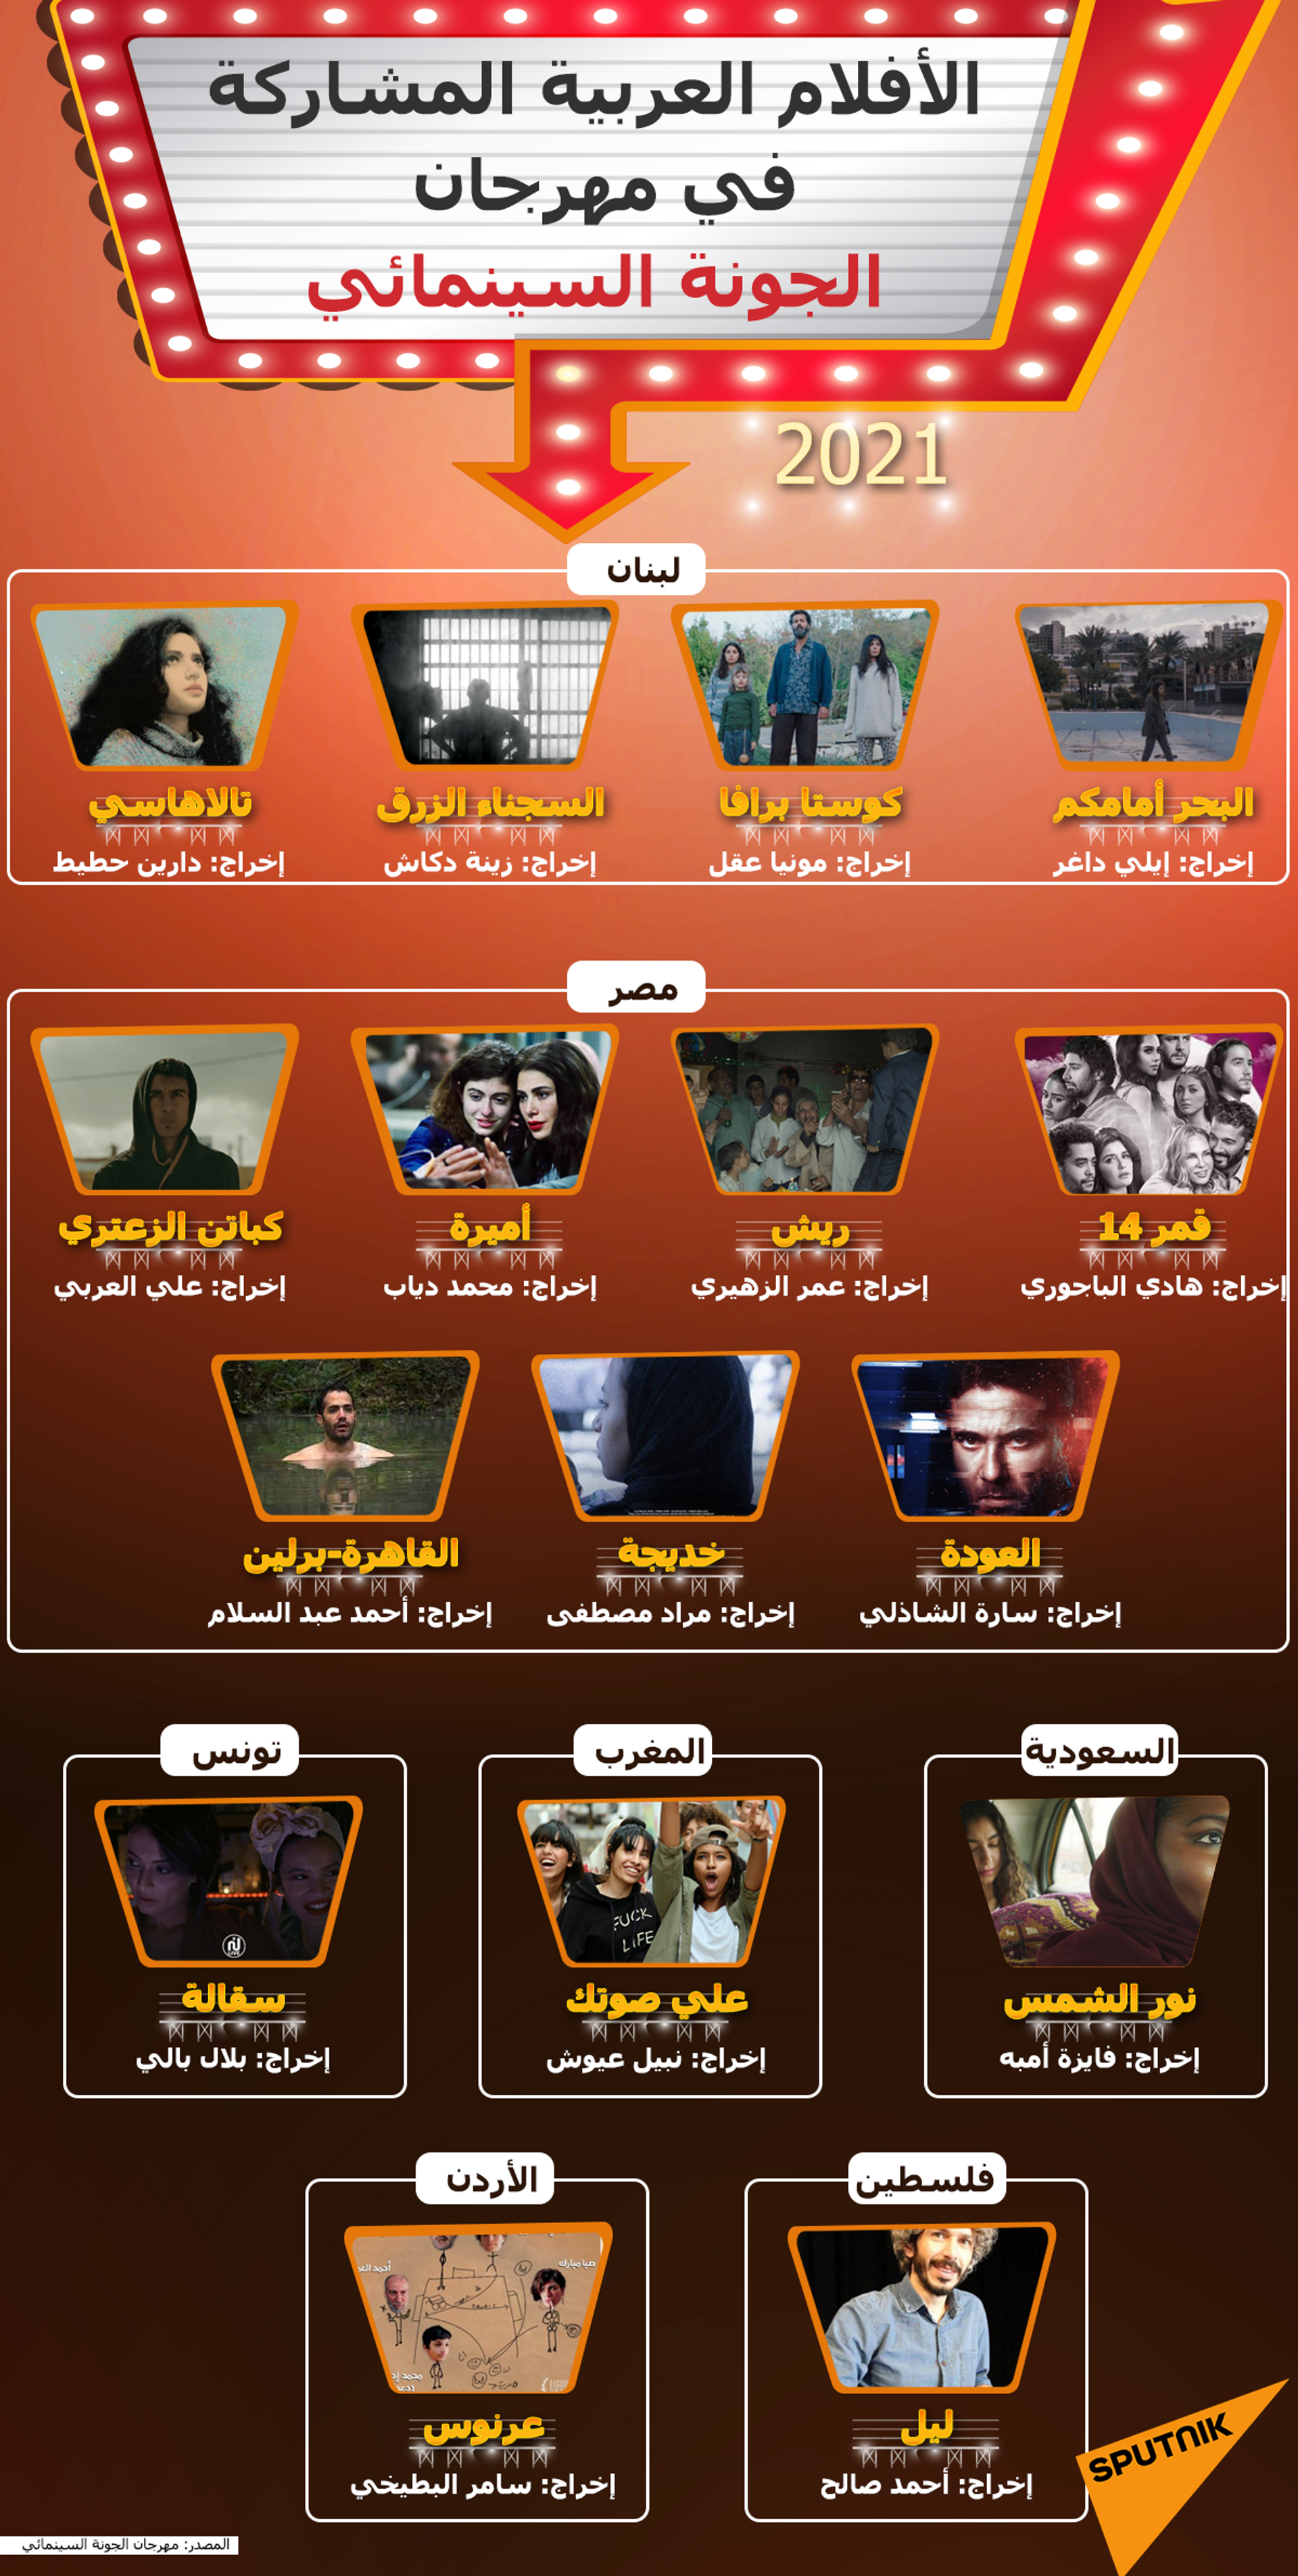 الأفلام العربية المشاركة في مهرجان الجونة السينمائي 2021 - سبوتنيك عربي, 1920, 23.11.2021